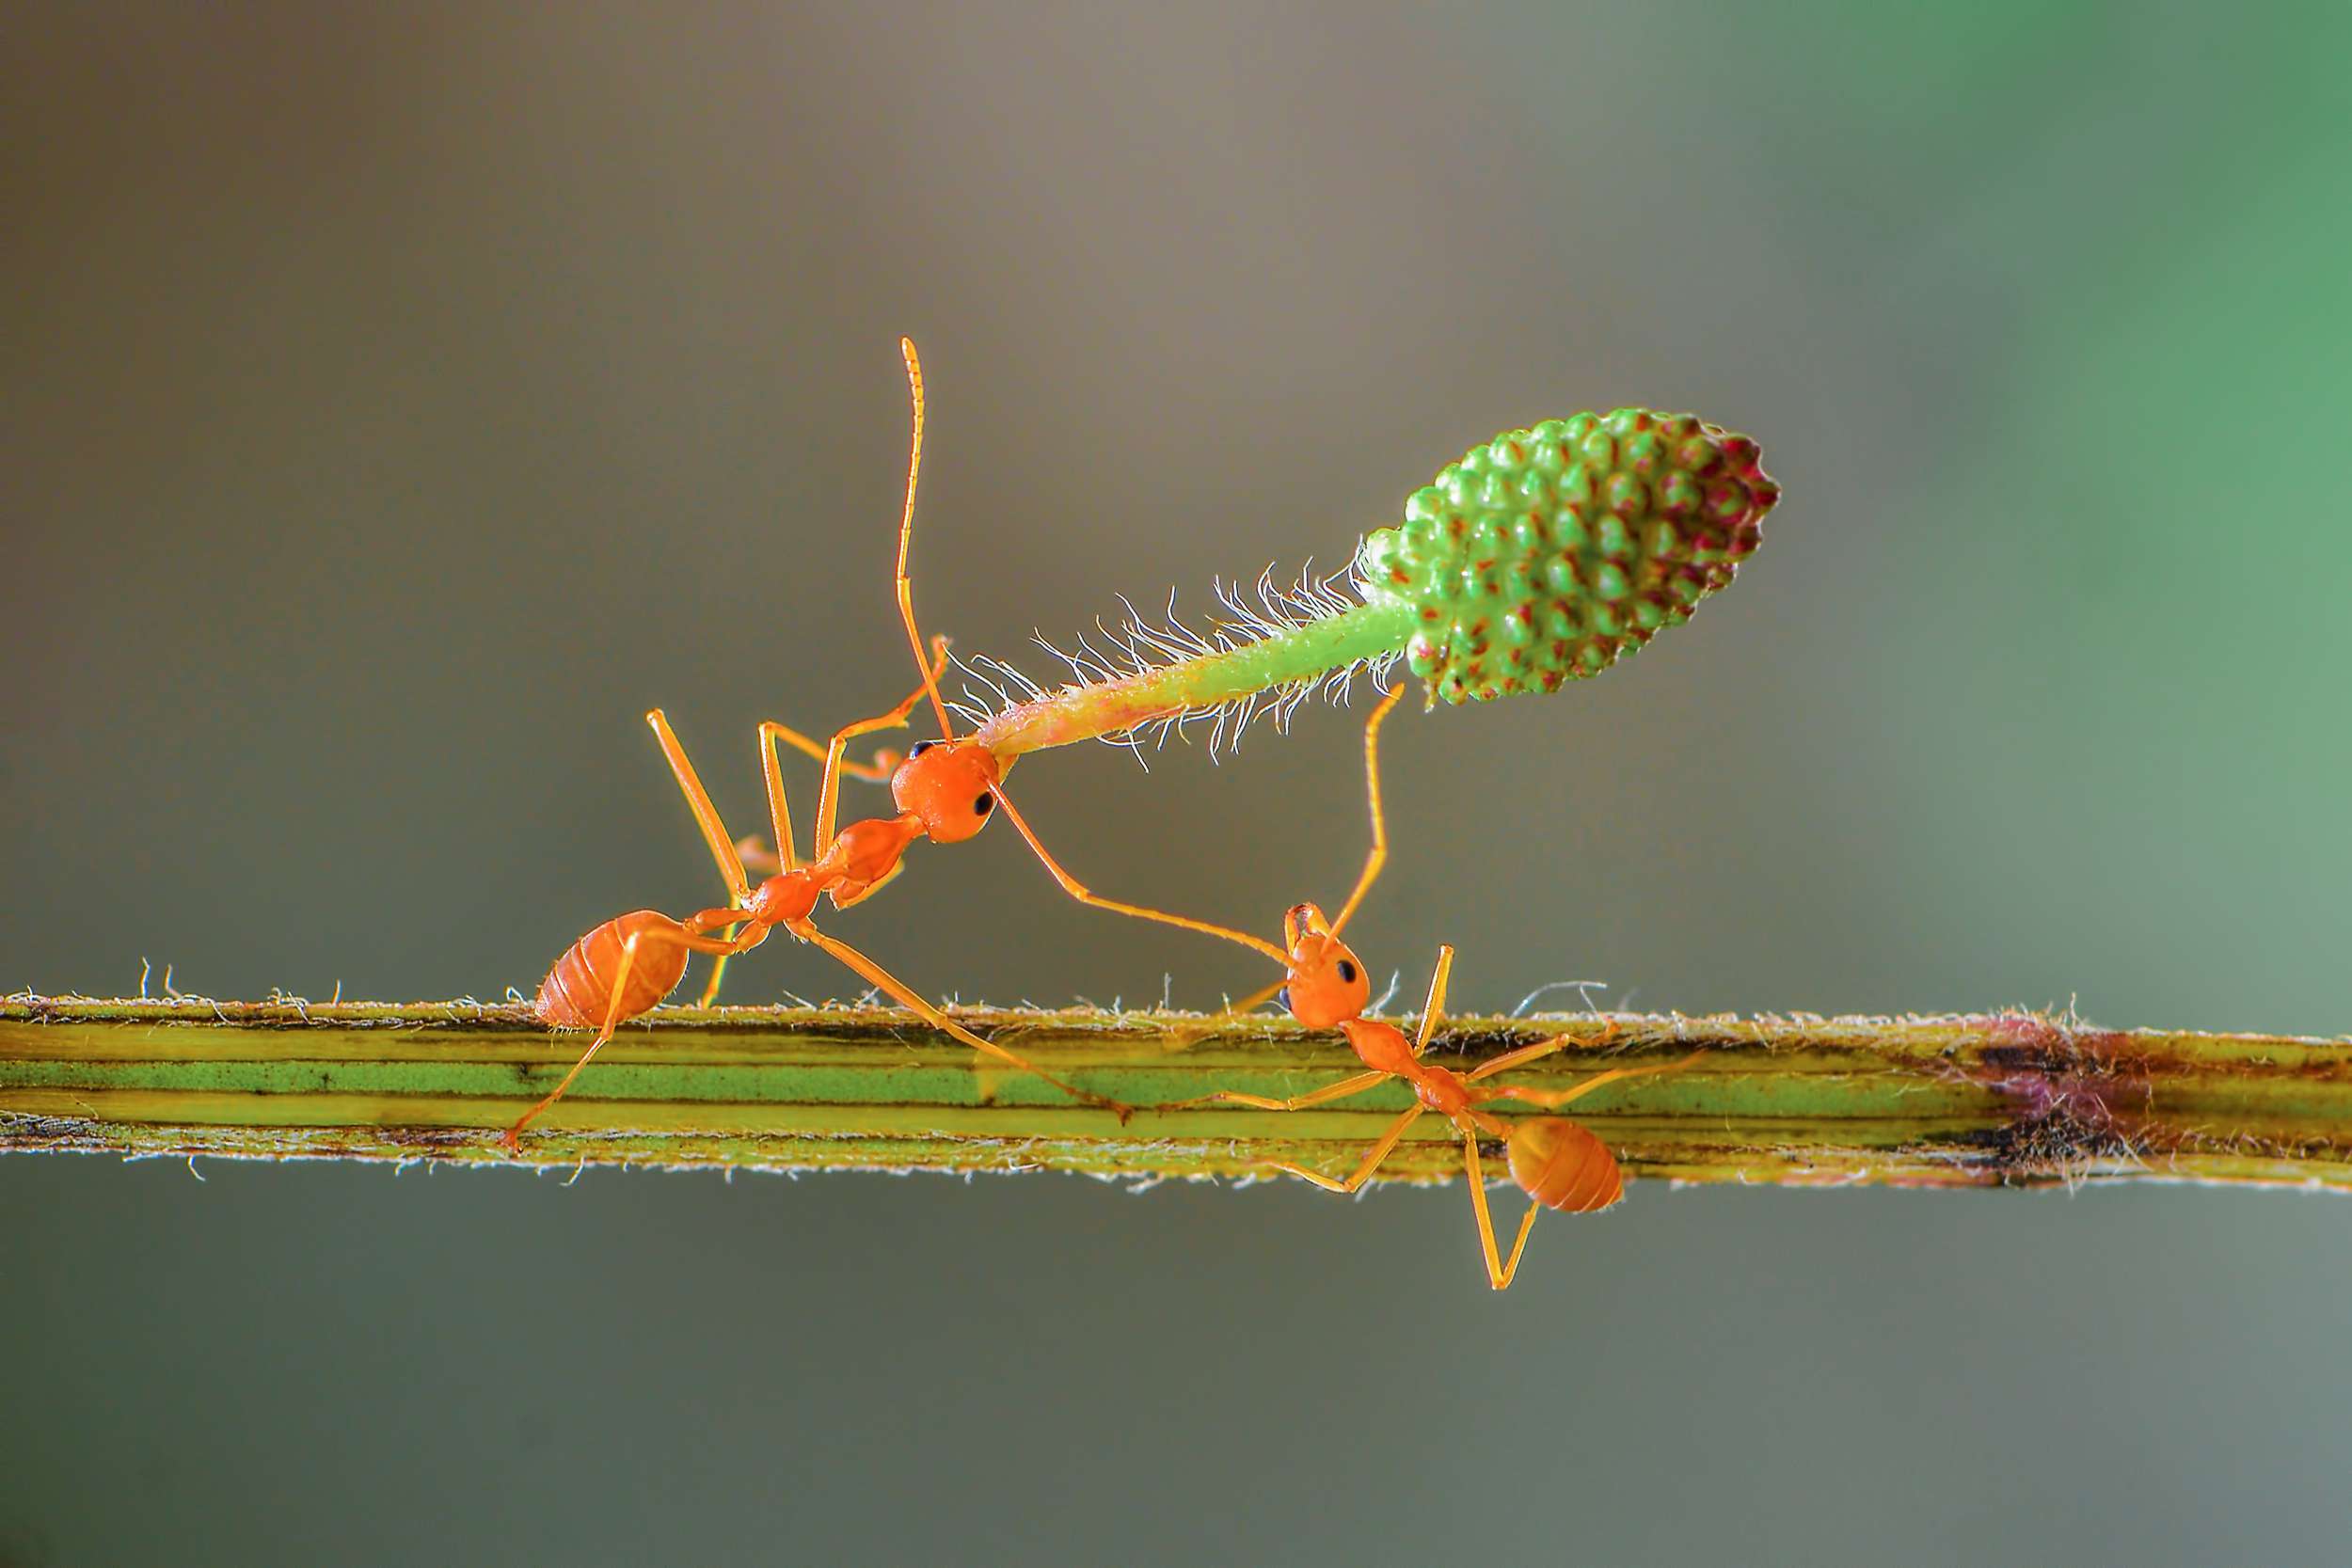 蚂蚁互相帮助举起一朵花